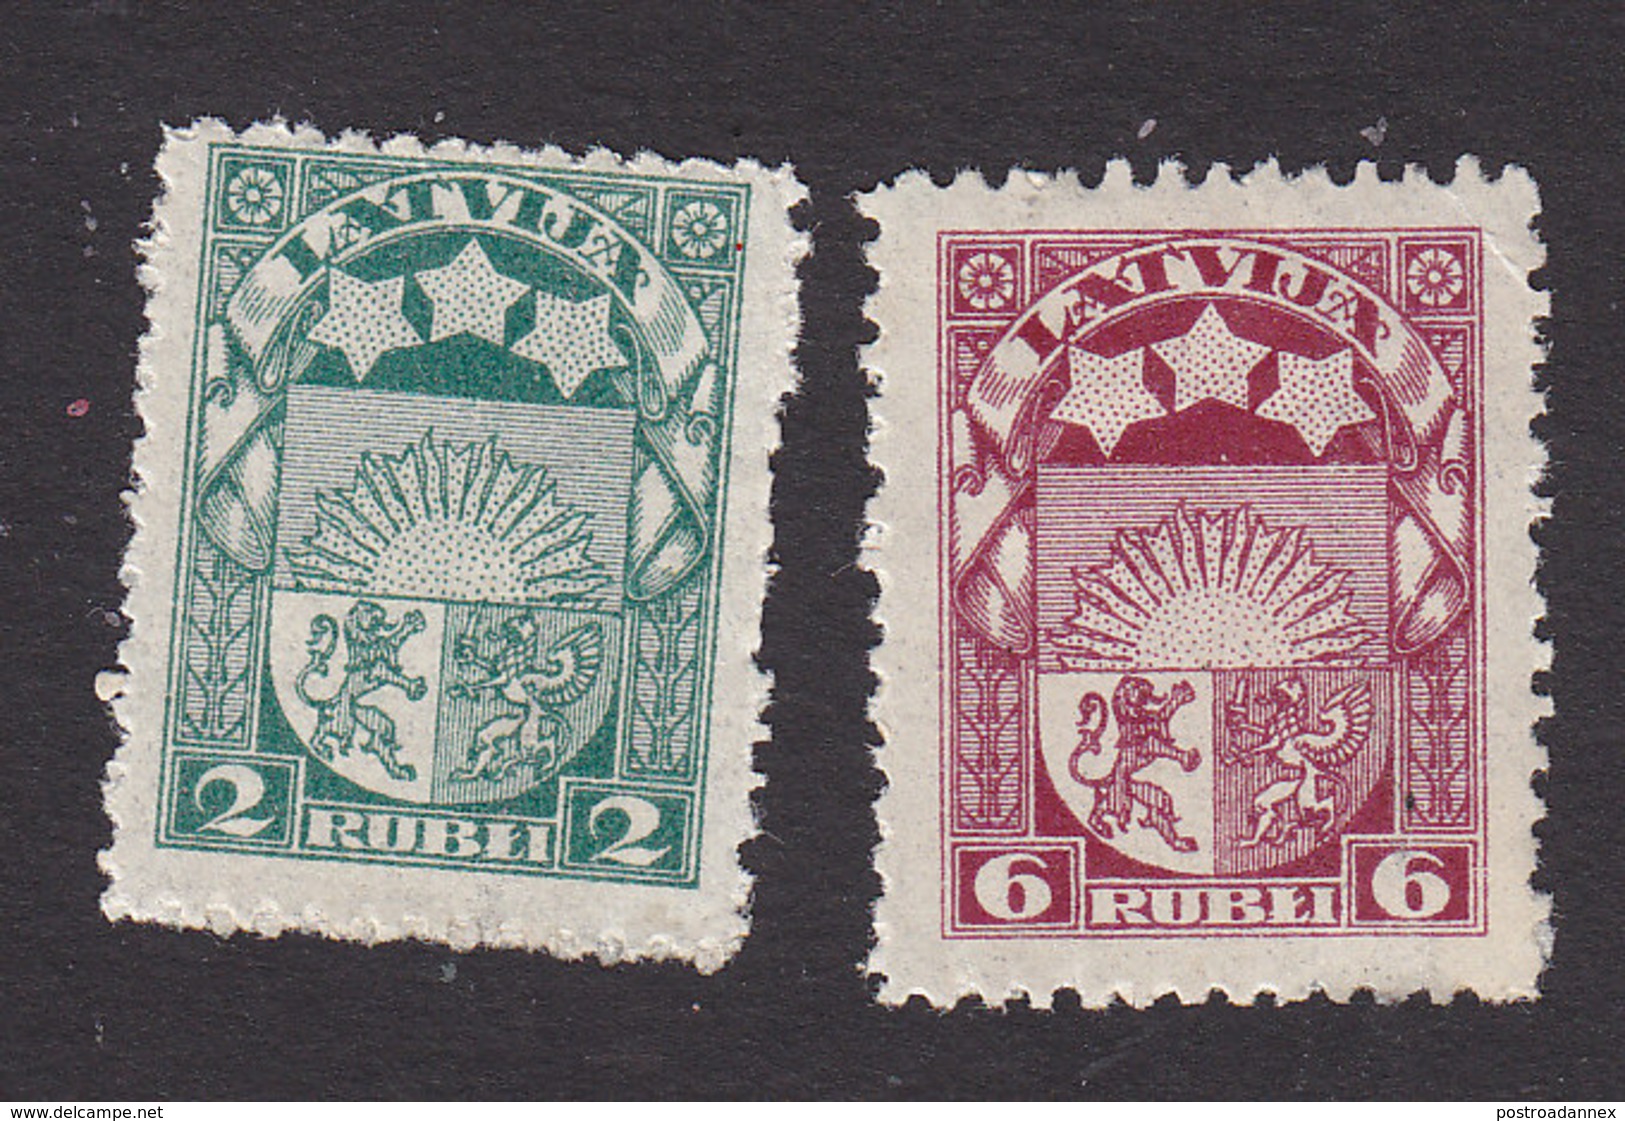 Latvia, Scott #103, 106, Mint Hinged, Arms And Stars, Issued 1921 - Latvia